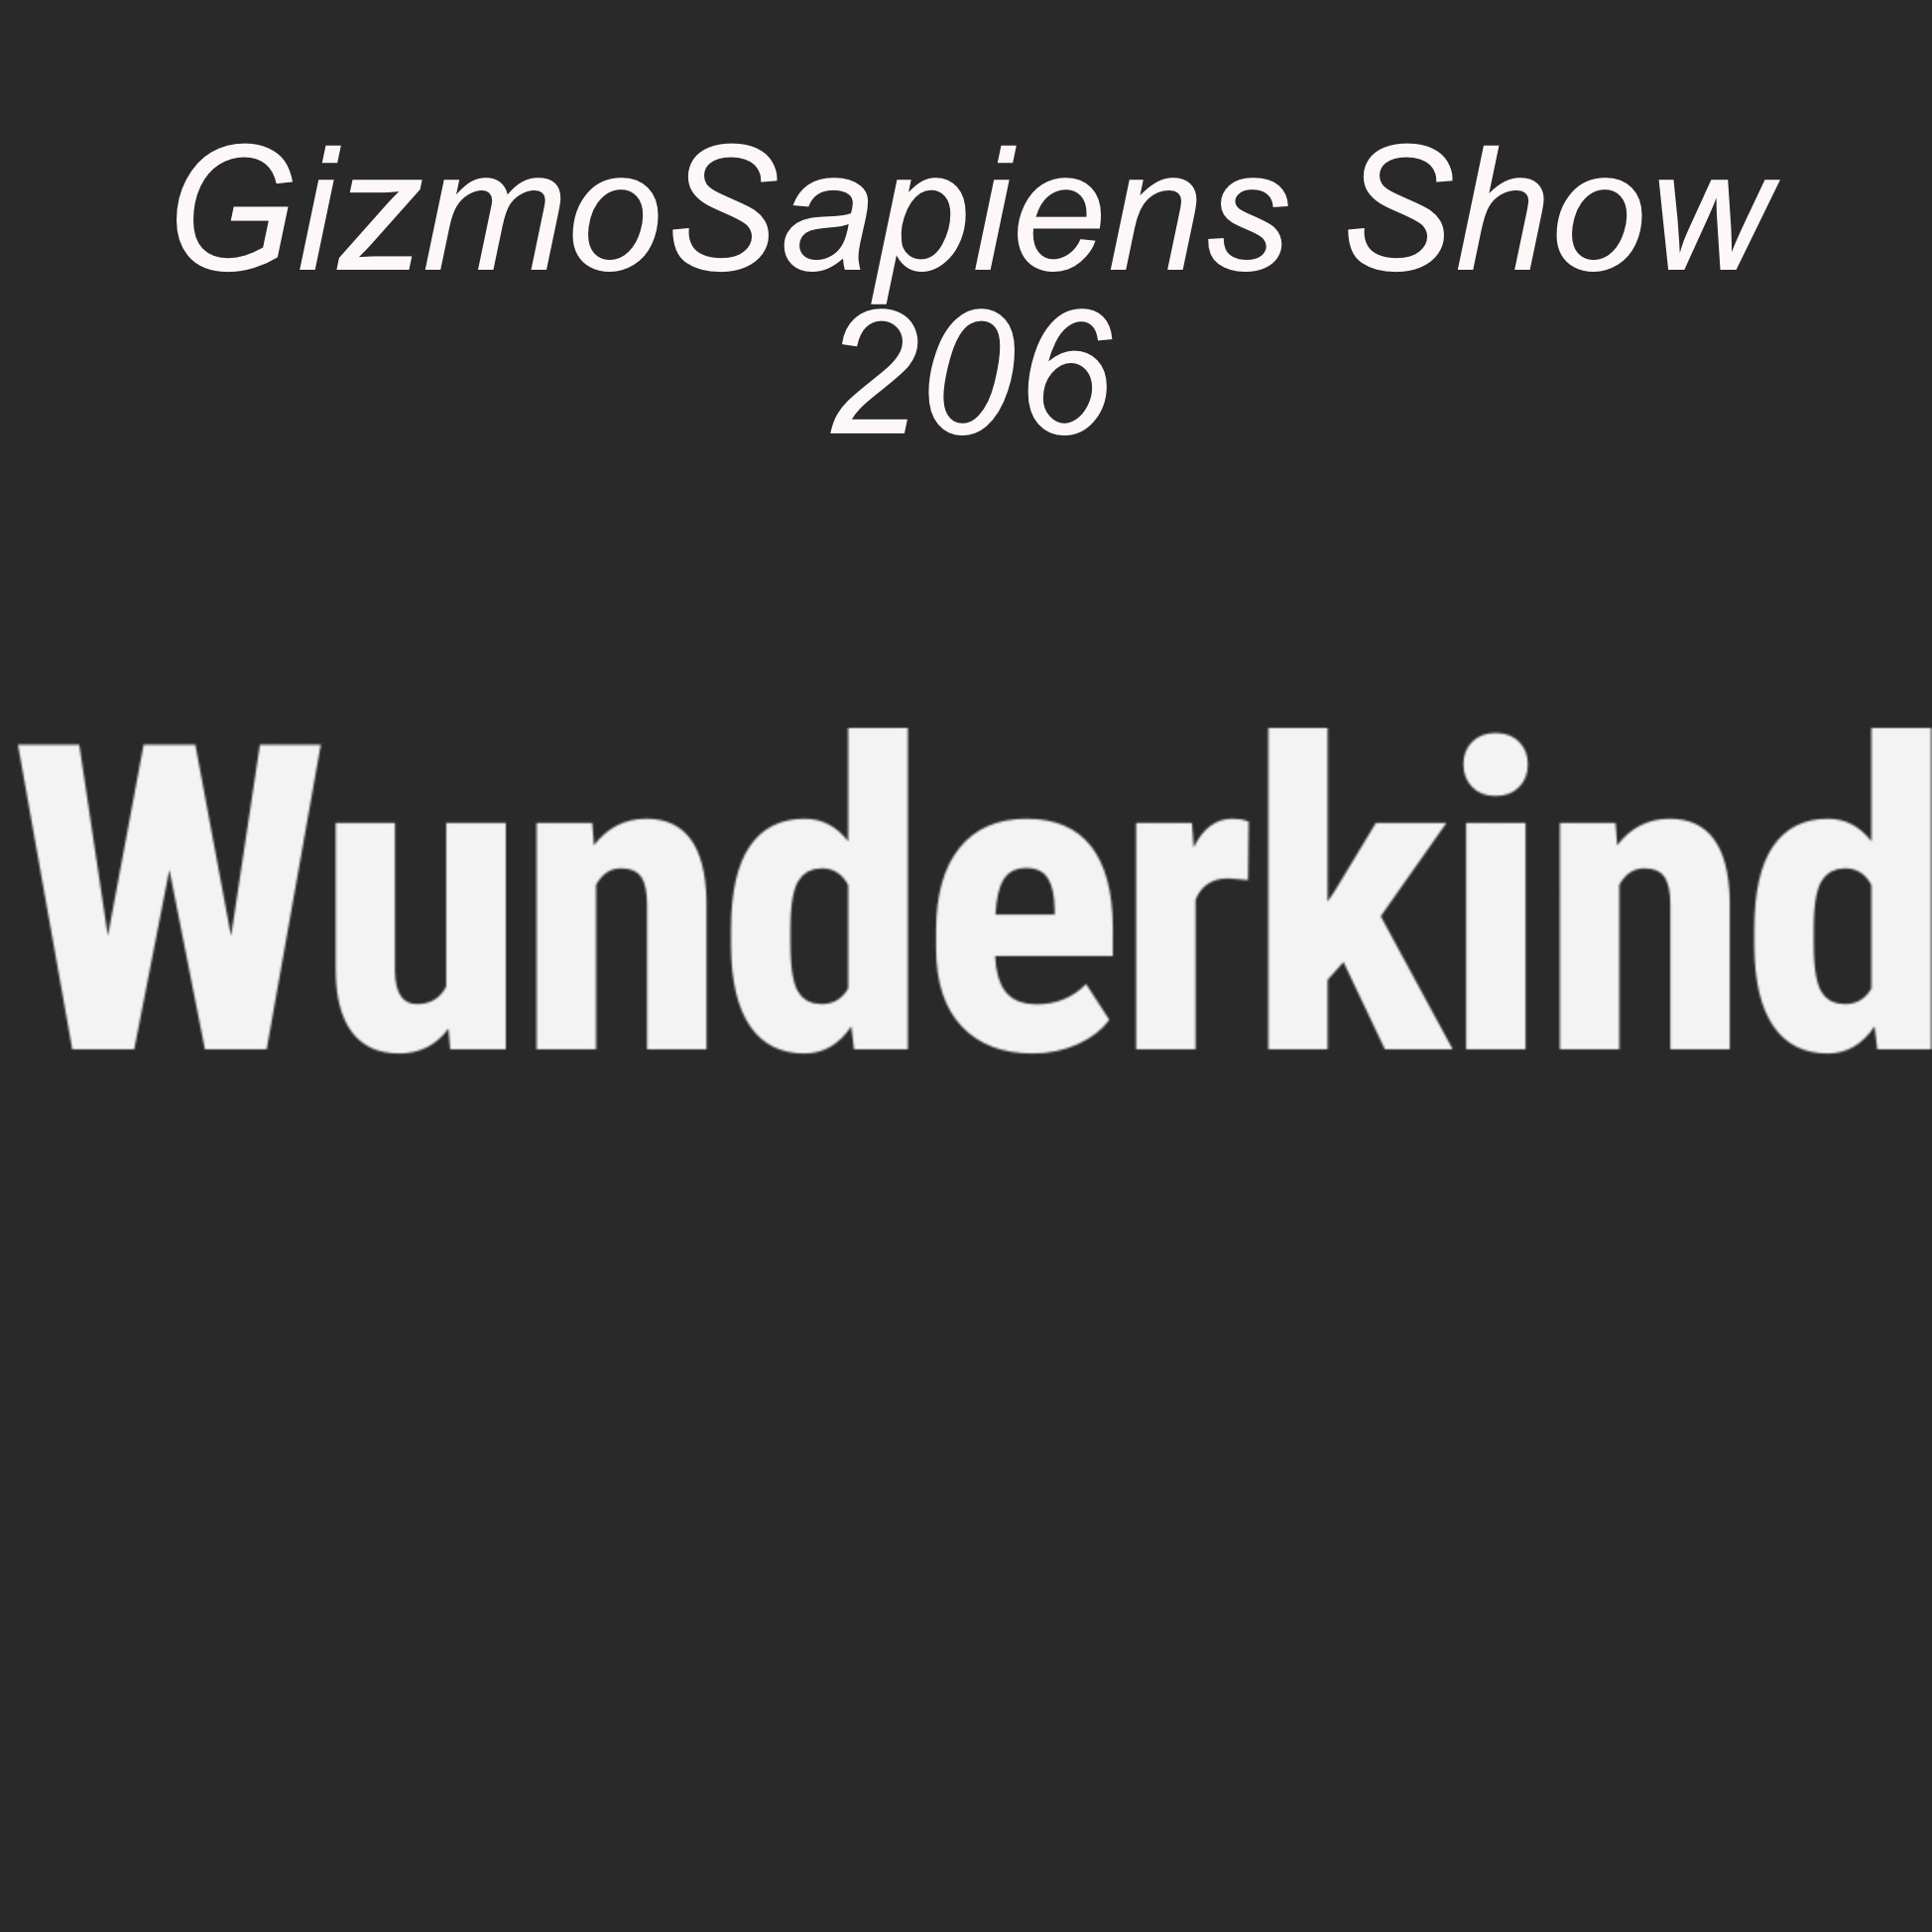 GizmoSapiens Show 206 - Wunderkind